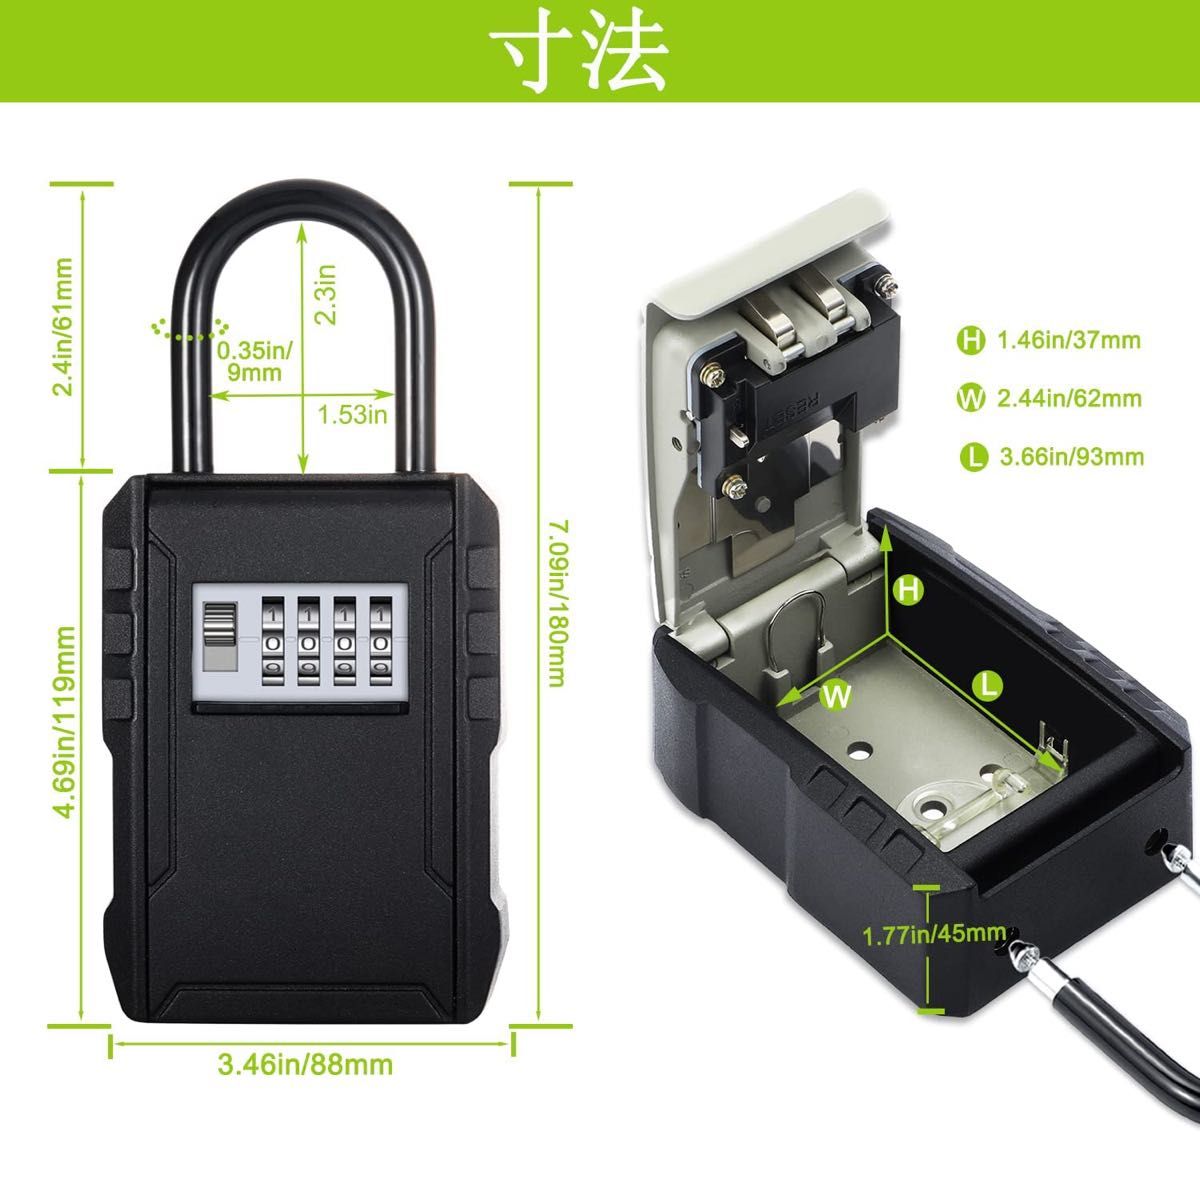 キーボックス 暗証番号 鍵 収納ボックス 4桁ダイヤル式 大容量 防犯 盗難防止 日本語説明書付き